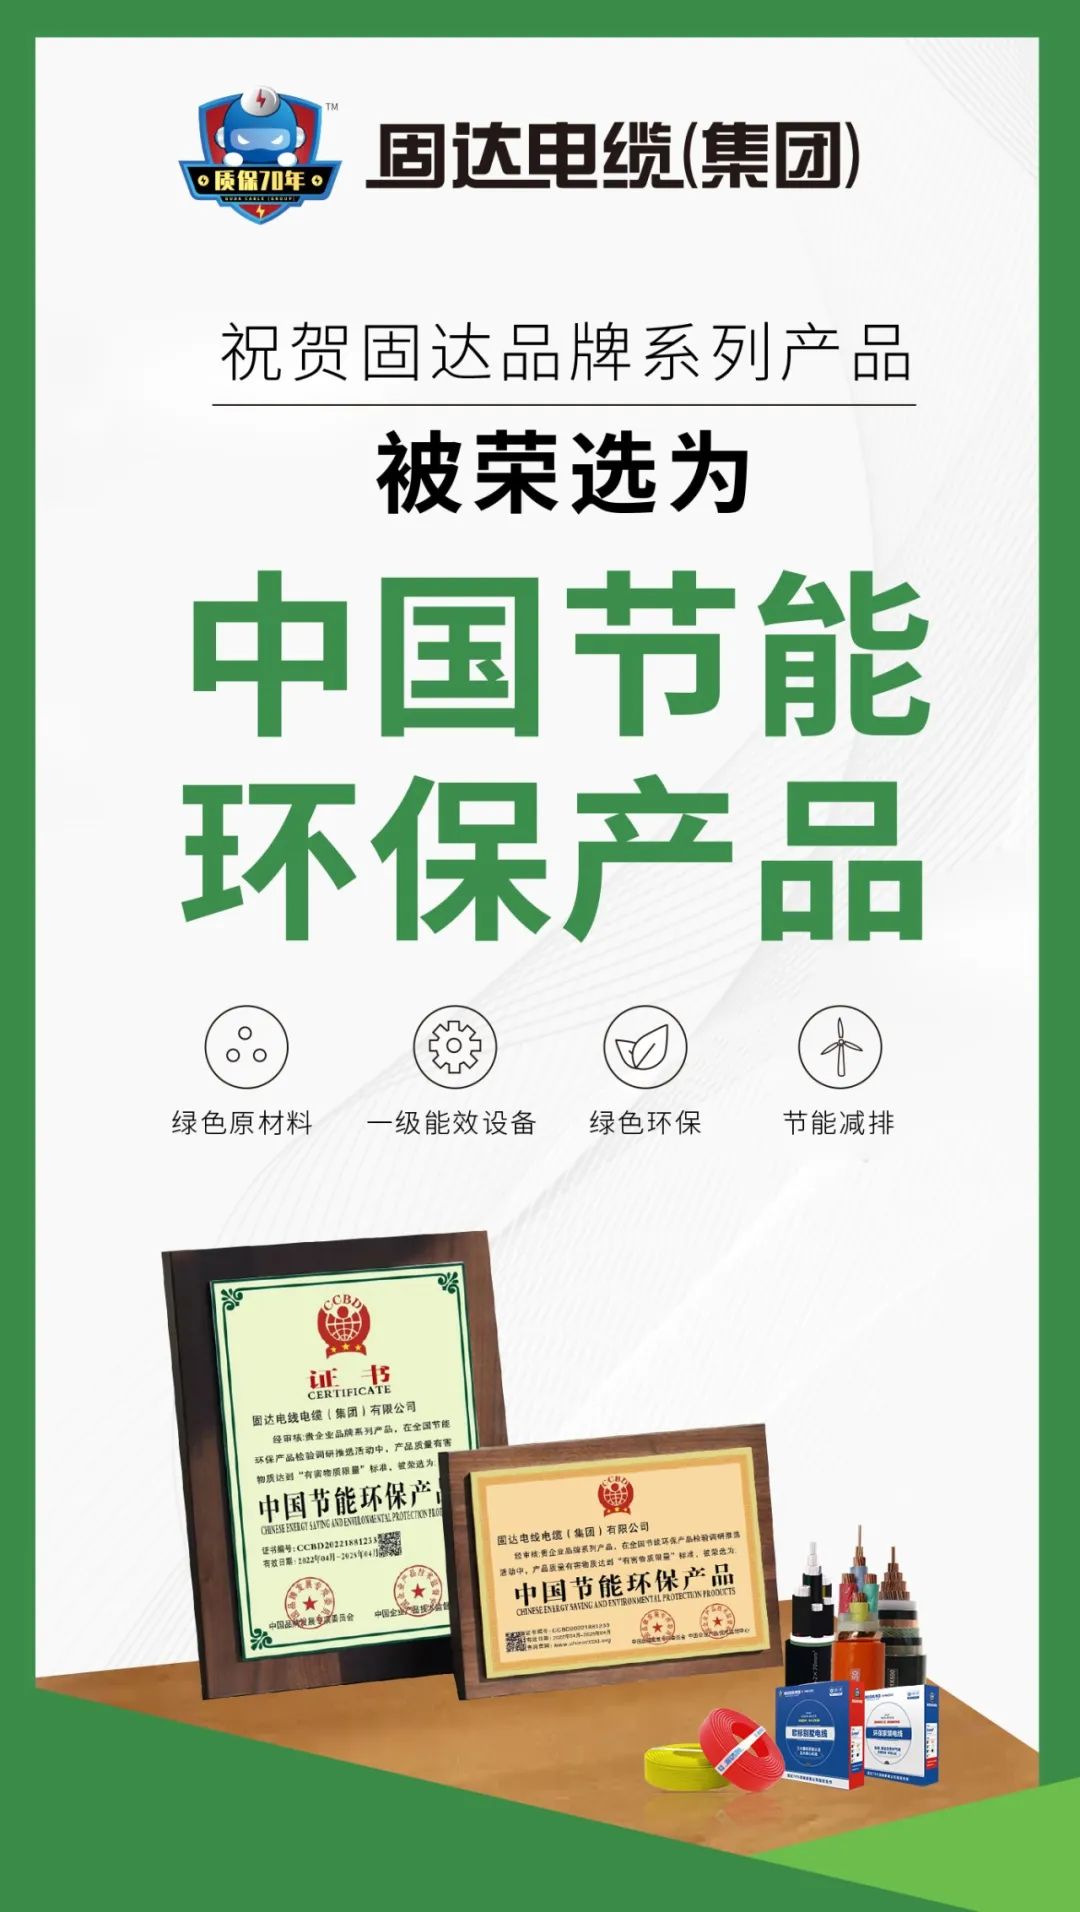 品牌观察 | 固达电缆集团再次荣获“中国节能环保产品”认证